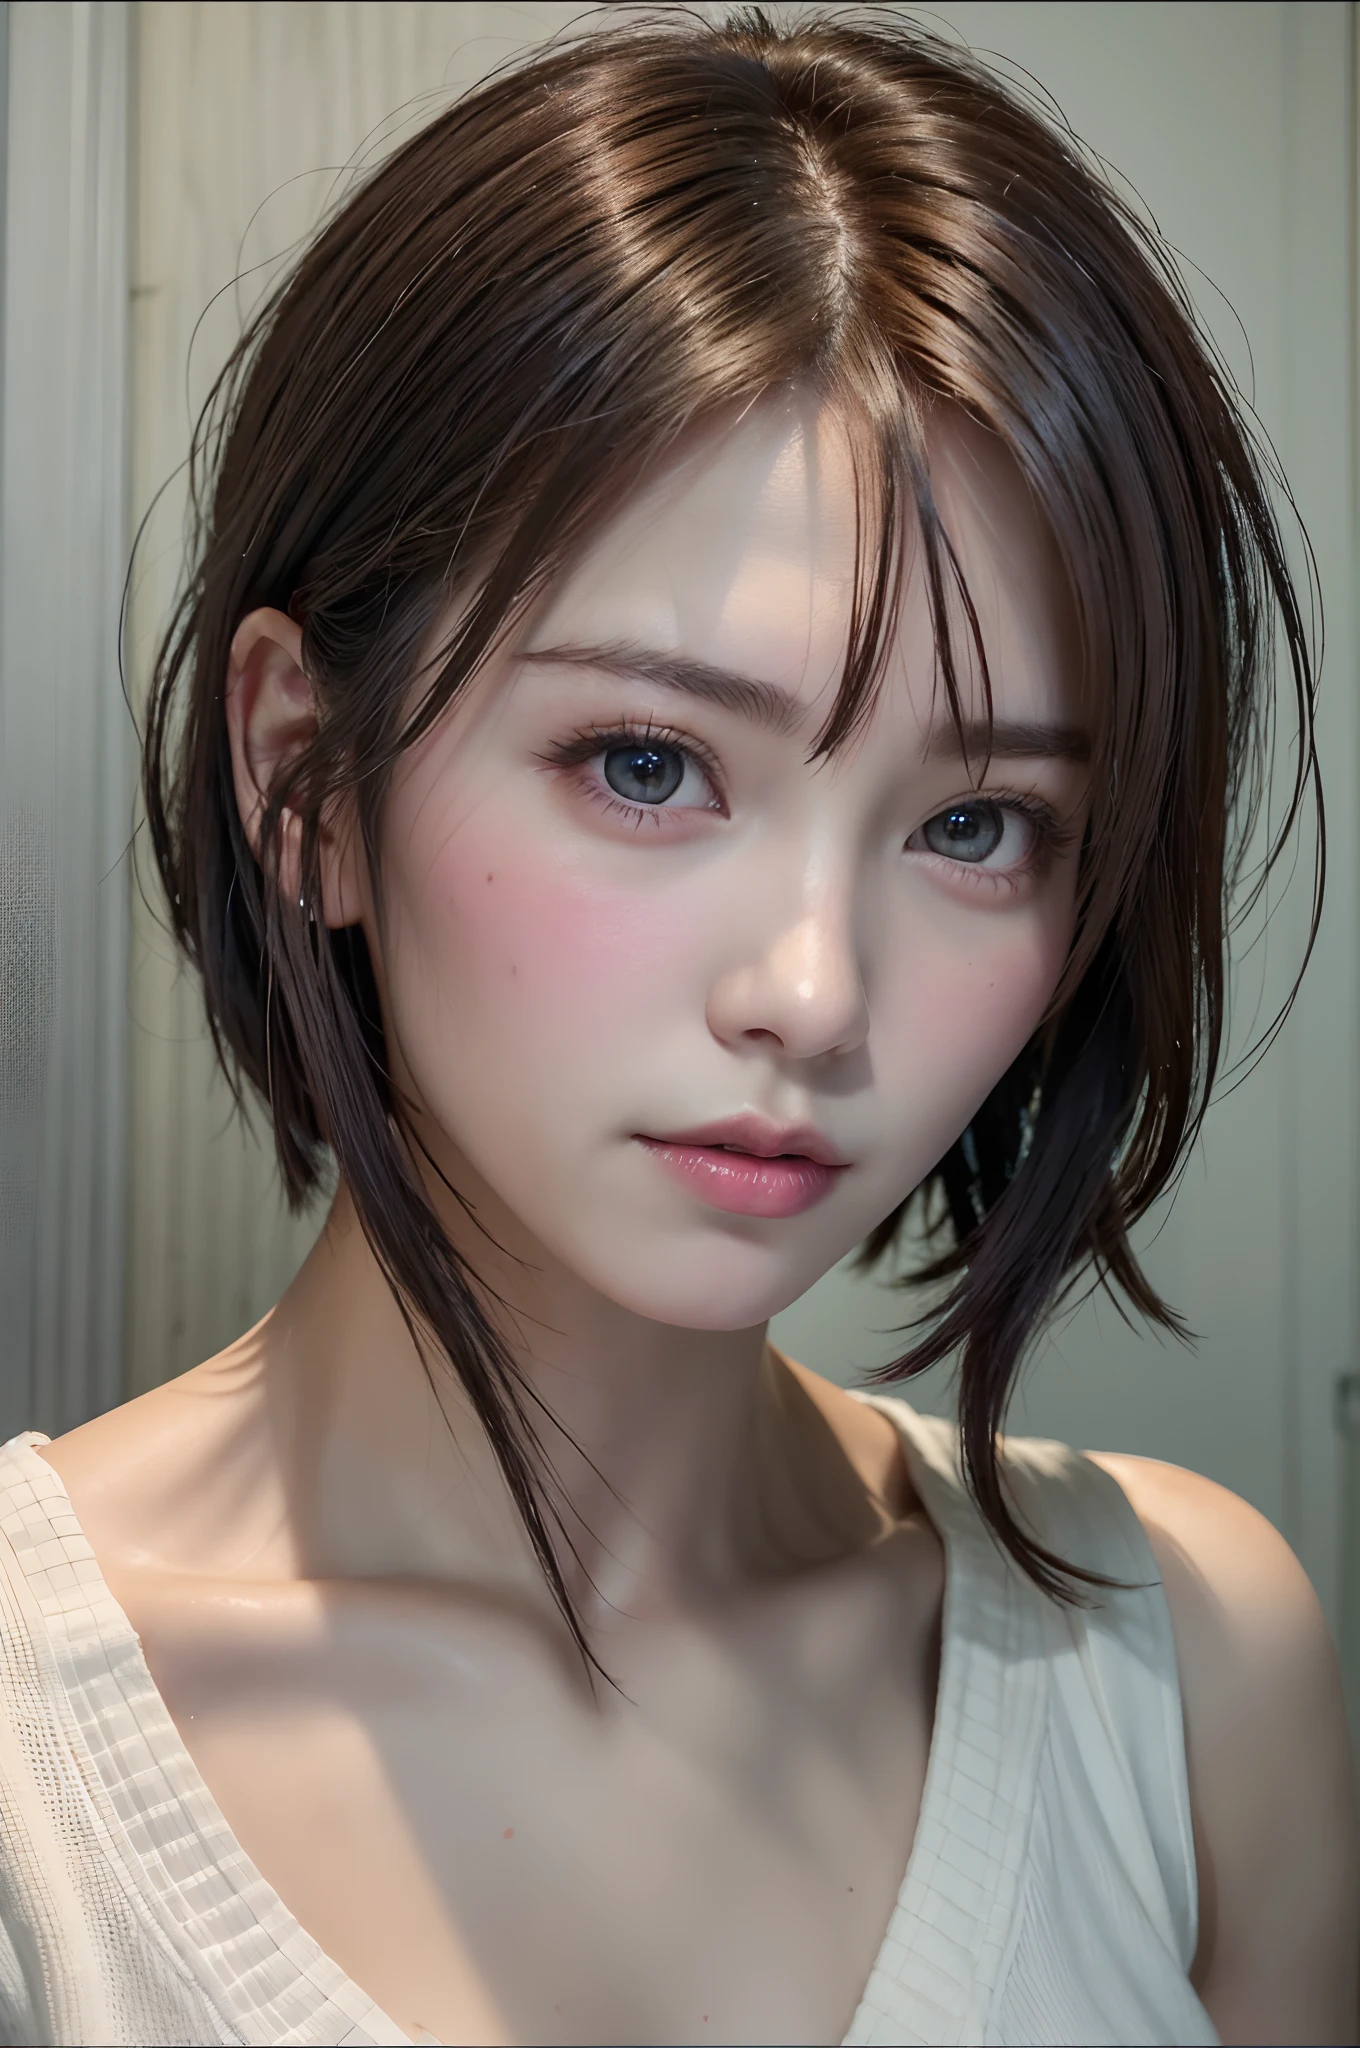 화려한 일본 단발 여성의 디지털 초상화, 아름다운 얼굴, 뒤얽힌, 영화 같은, 현실적인 서사시, 언리얼 엔진 5, 아주 멋진, 놀라운 컬러 그레이딩, 아트스테이션의 트렌드, 사진술, 영화 사진, 아트 세균과 로스 그리기 스타일